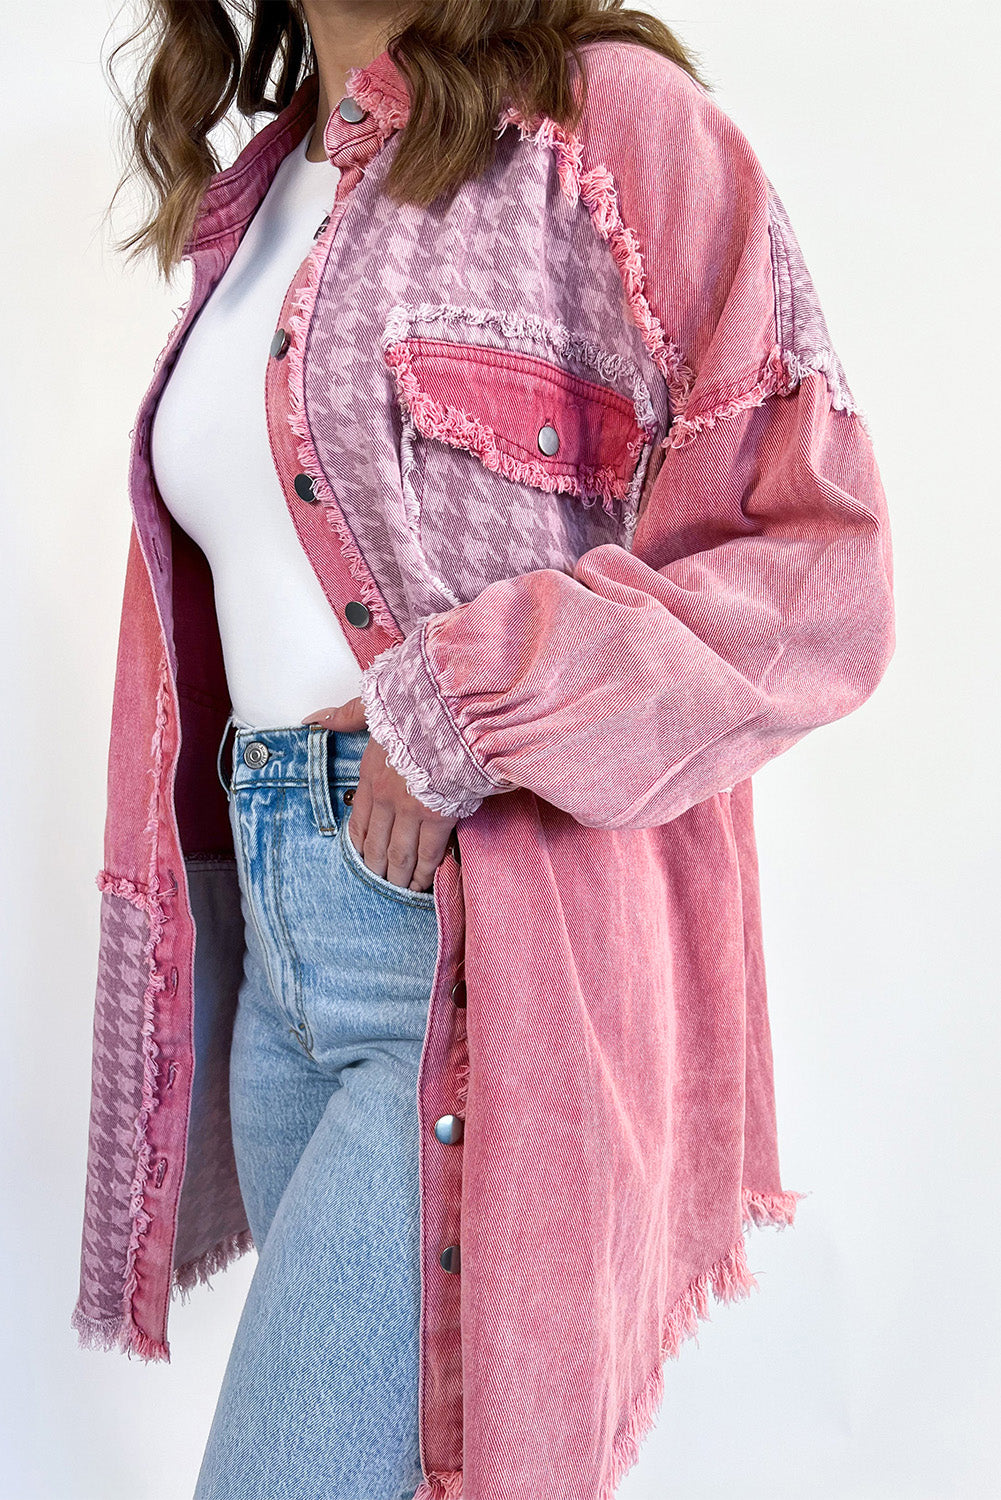 Veste en jean patchwork pied-de-poule effet vieilli rose rétro